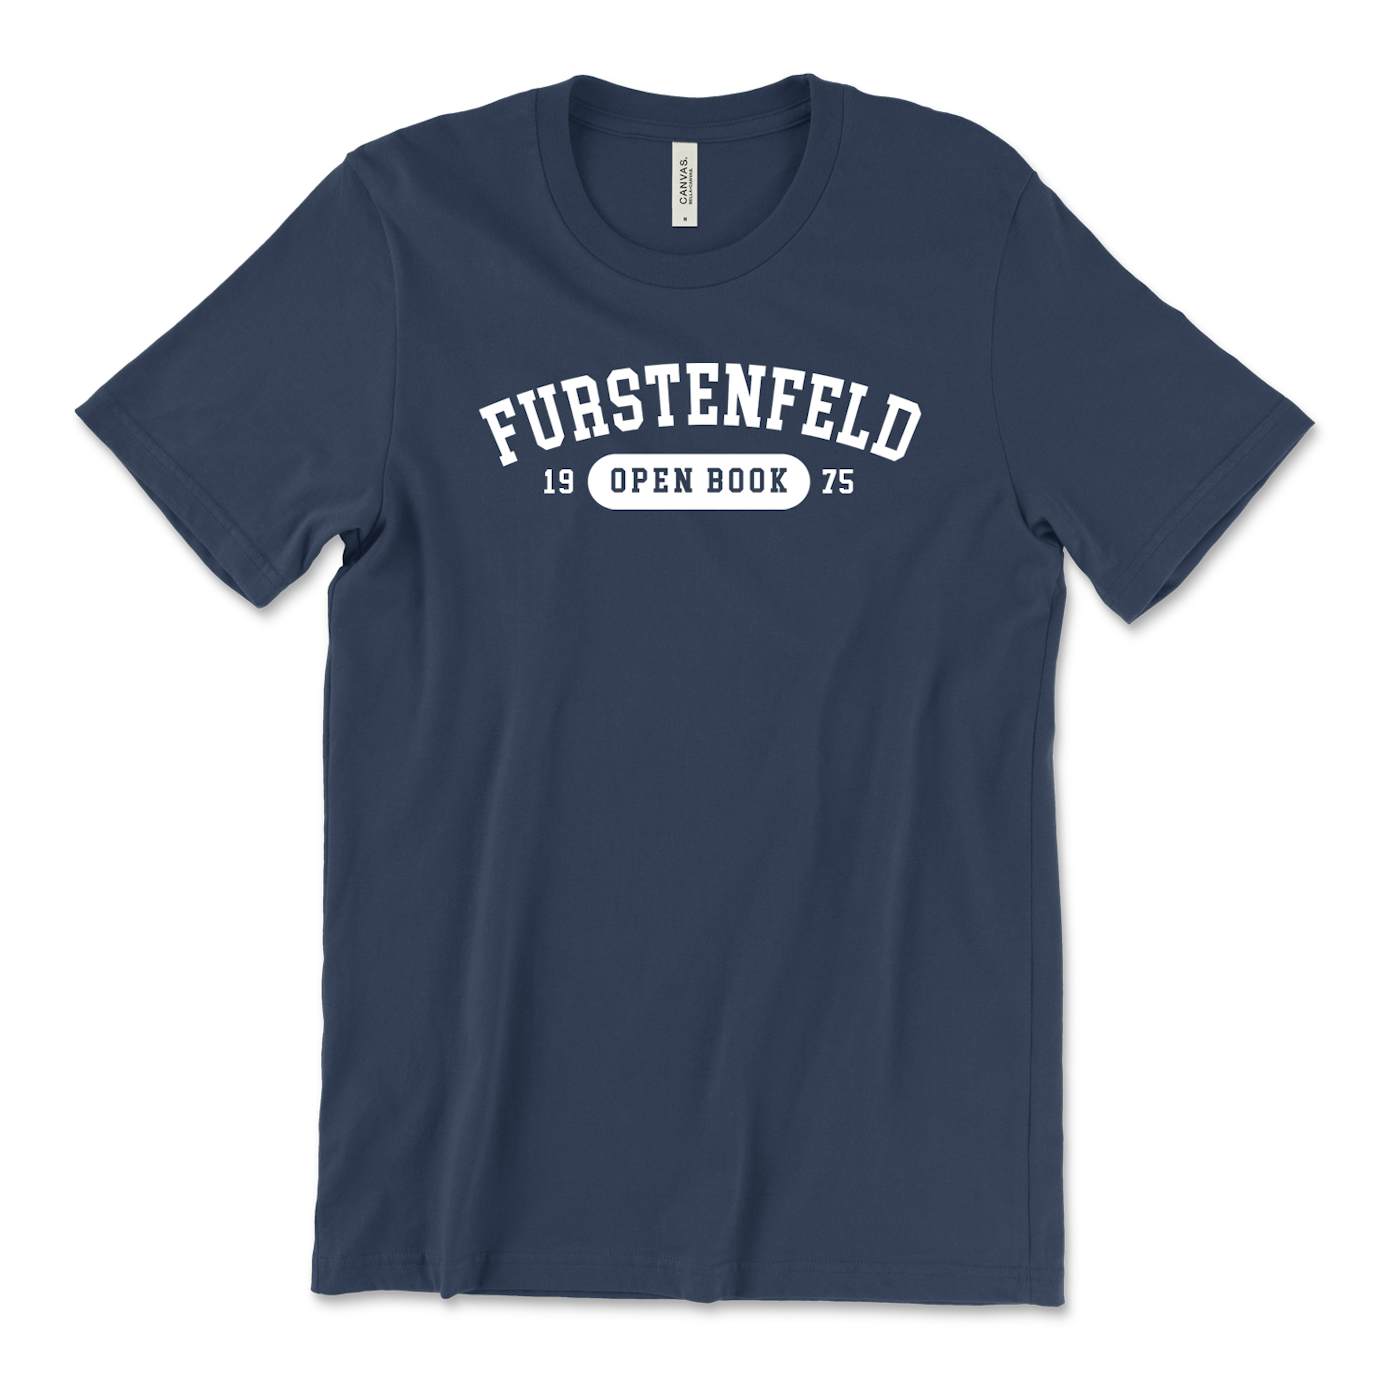 Gunner Black Co Justin Furstenfeld - Furstenfeld 1975 Navy Tee